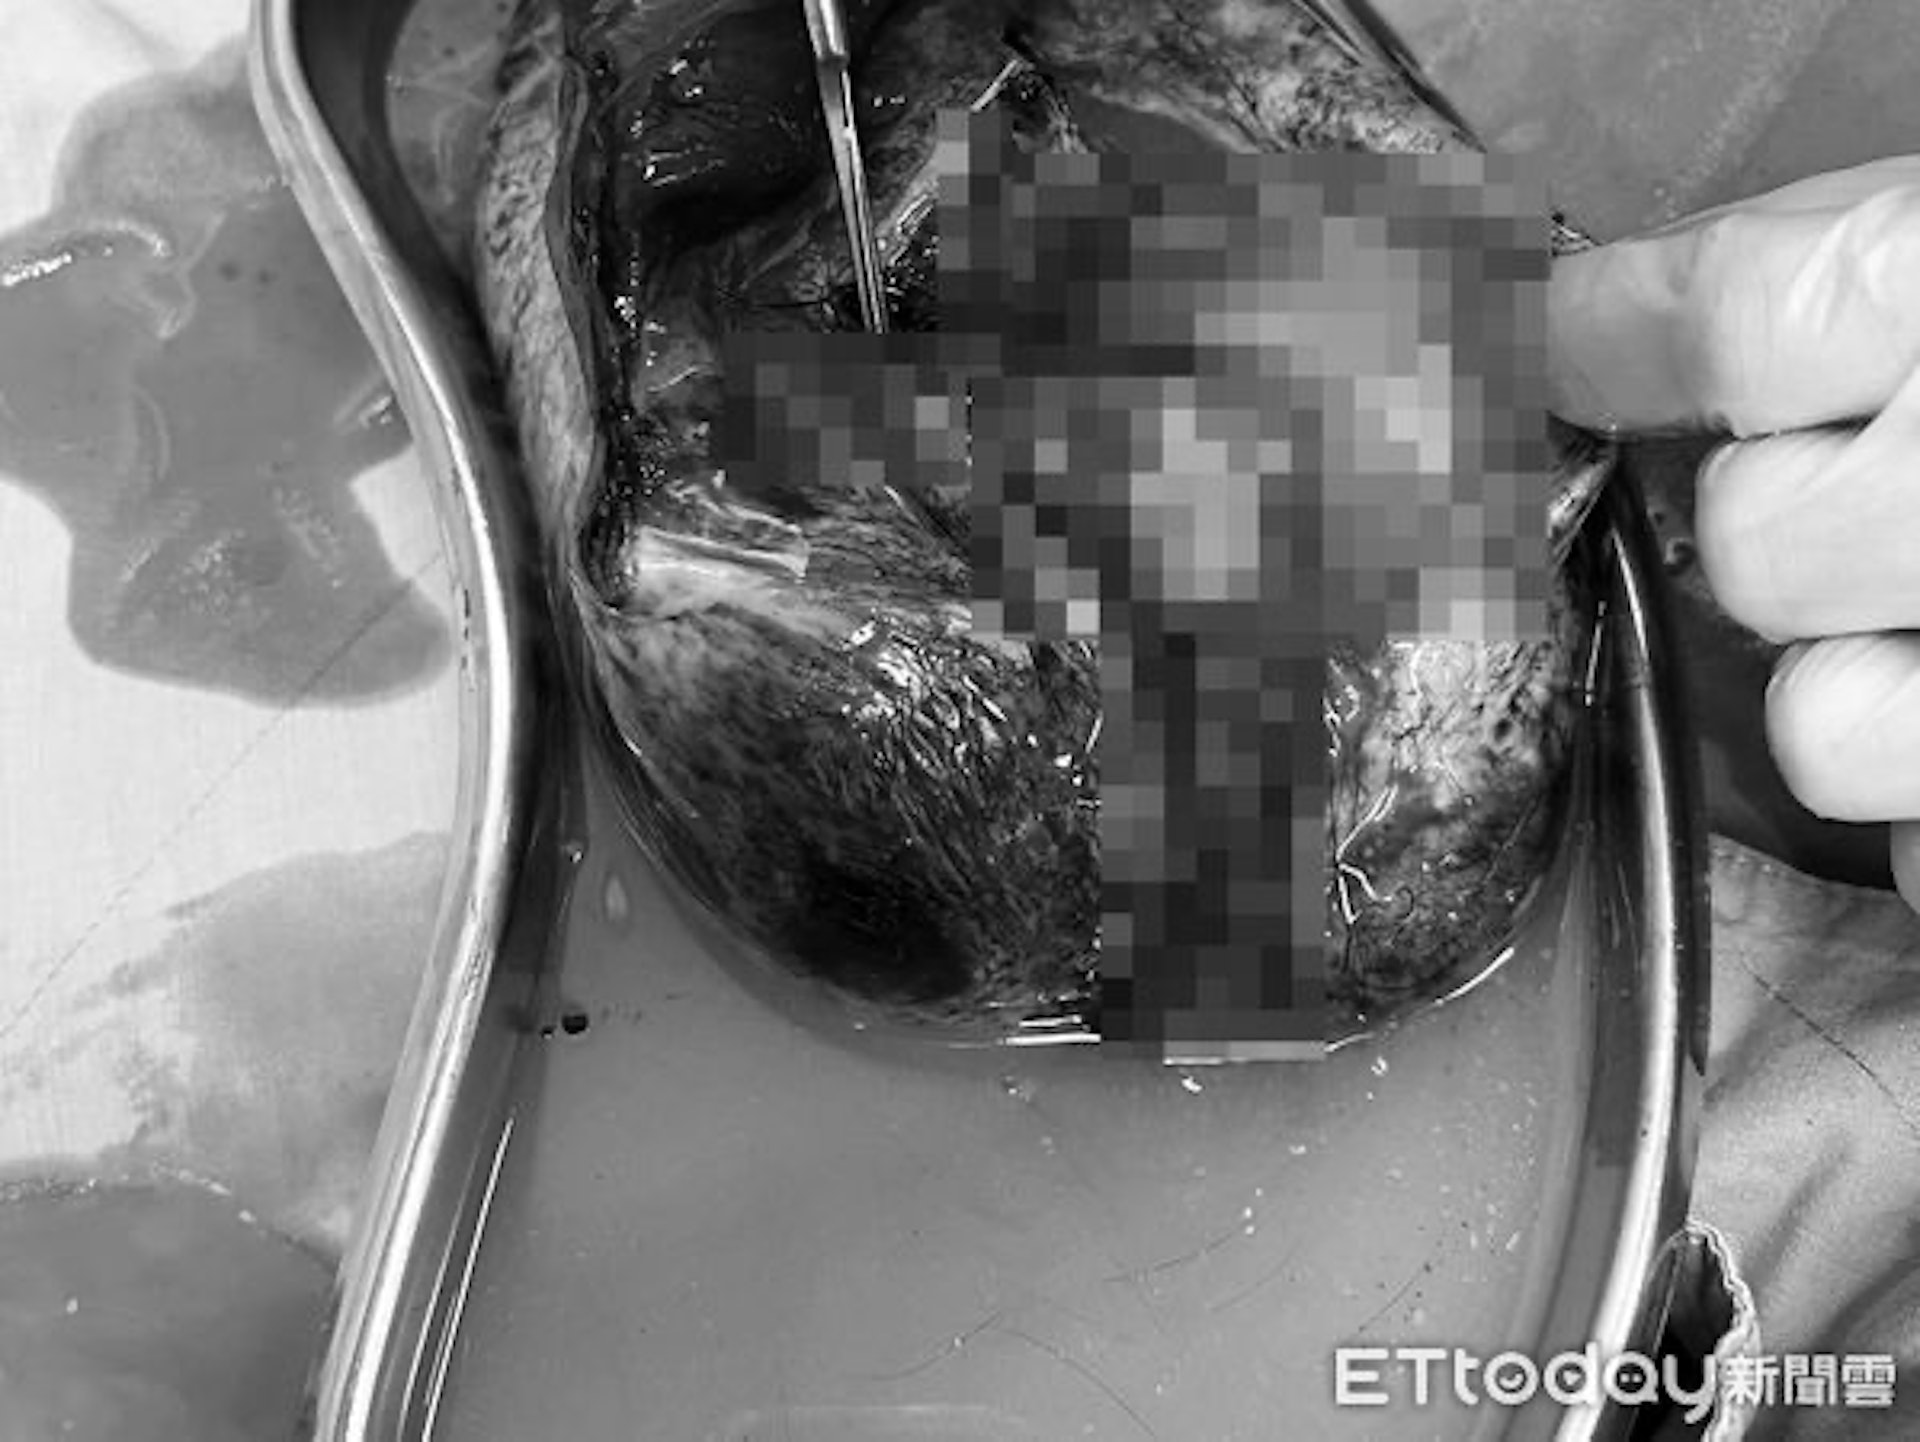 女子肚子裡藏著20厘米的畸胎瘤。（圖片經變色、馬賽克處理／Ettoday及李偉浩醫生授權提供）